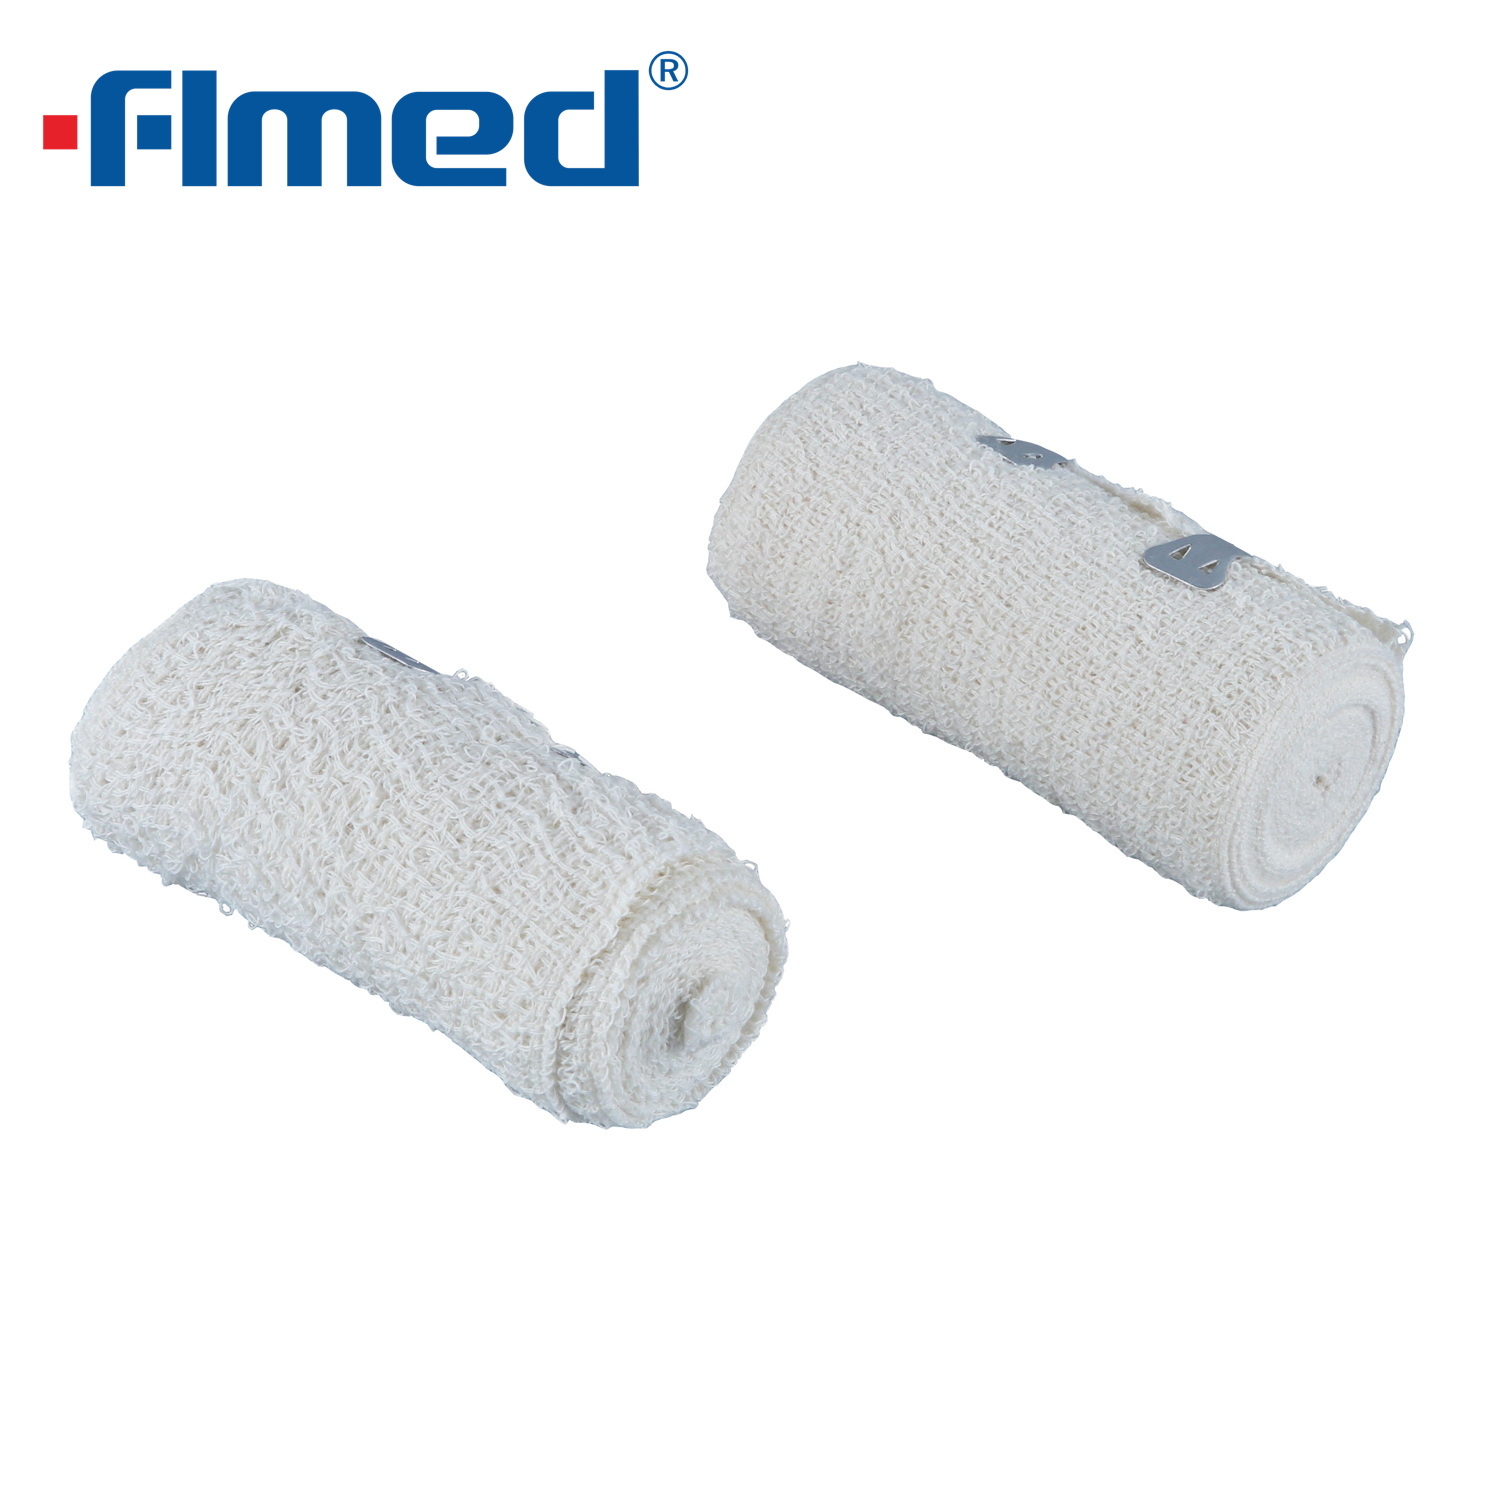 Medical Cotton Crepe Bandage 